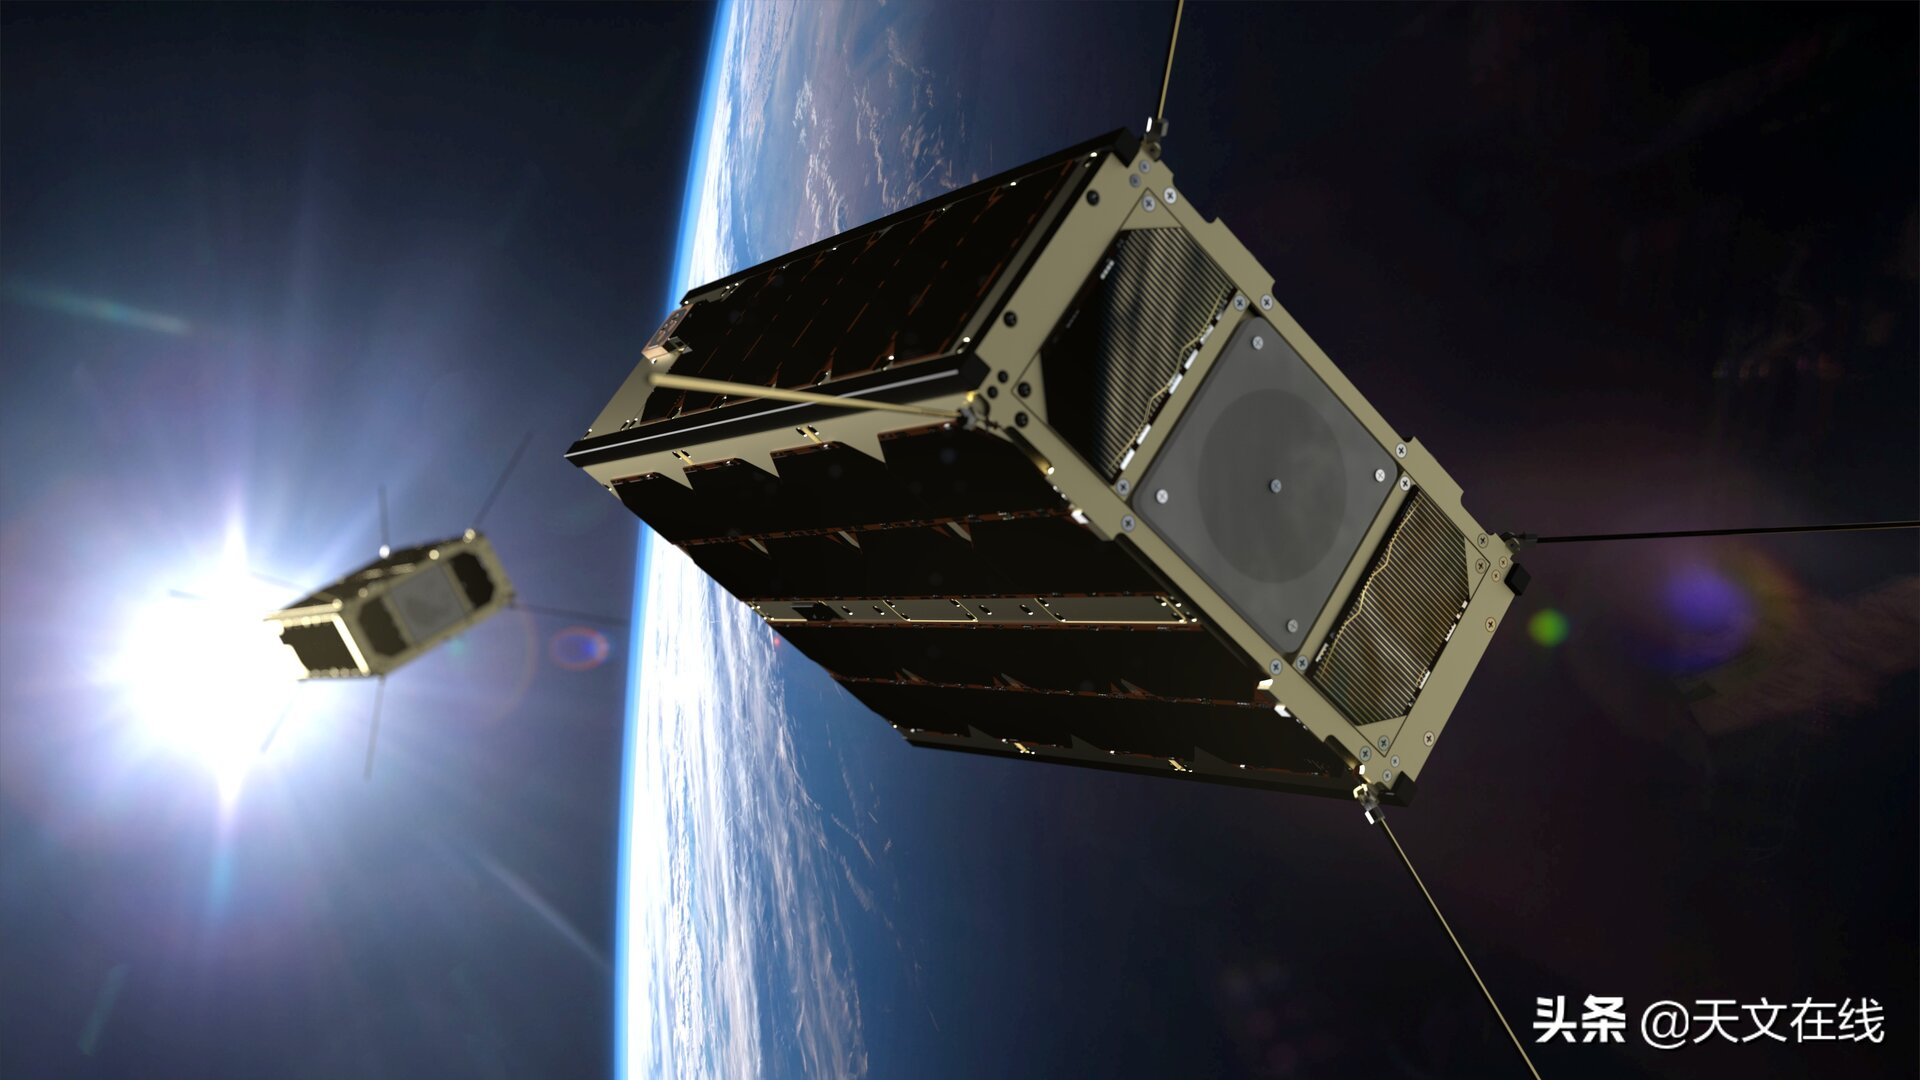 微型恒星追踪器帮助宇宙飞船找到它们的位置